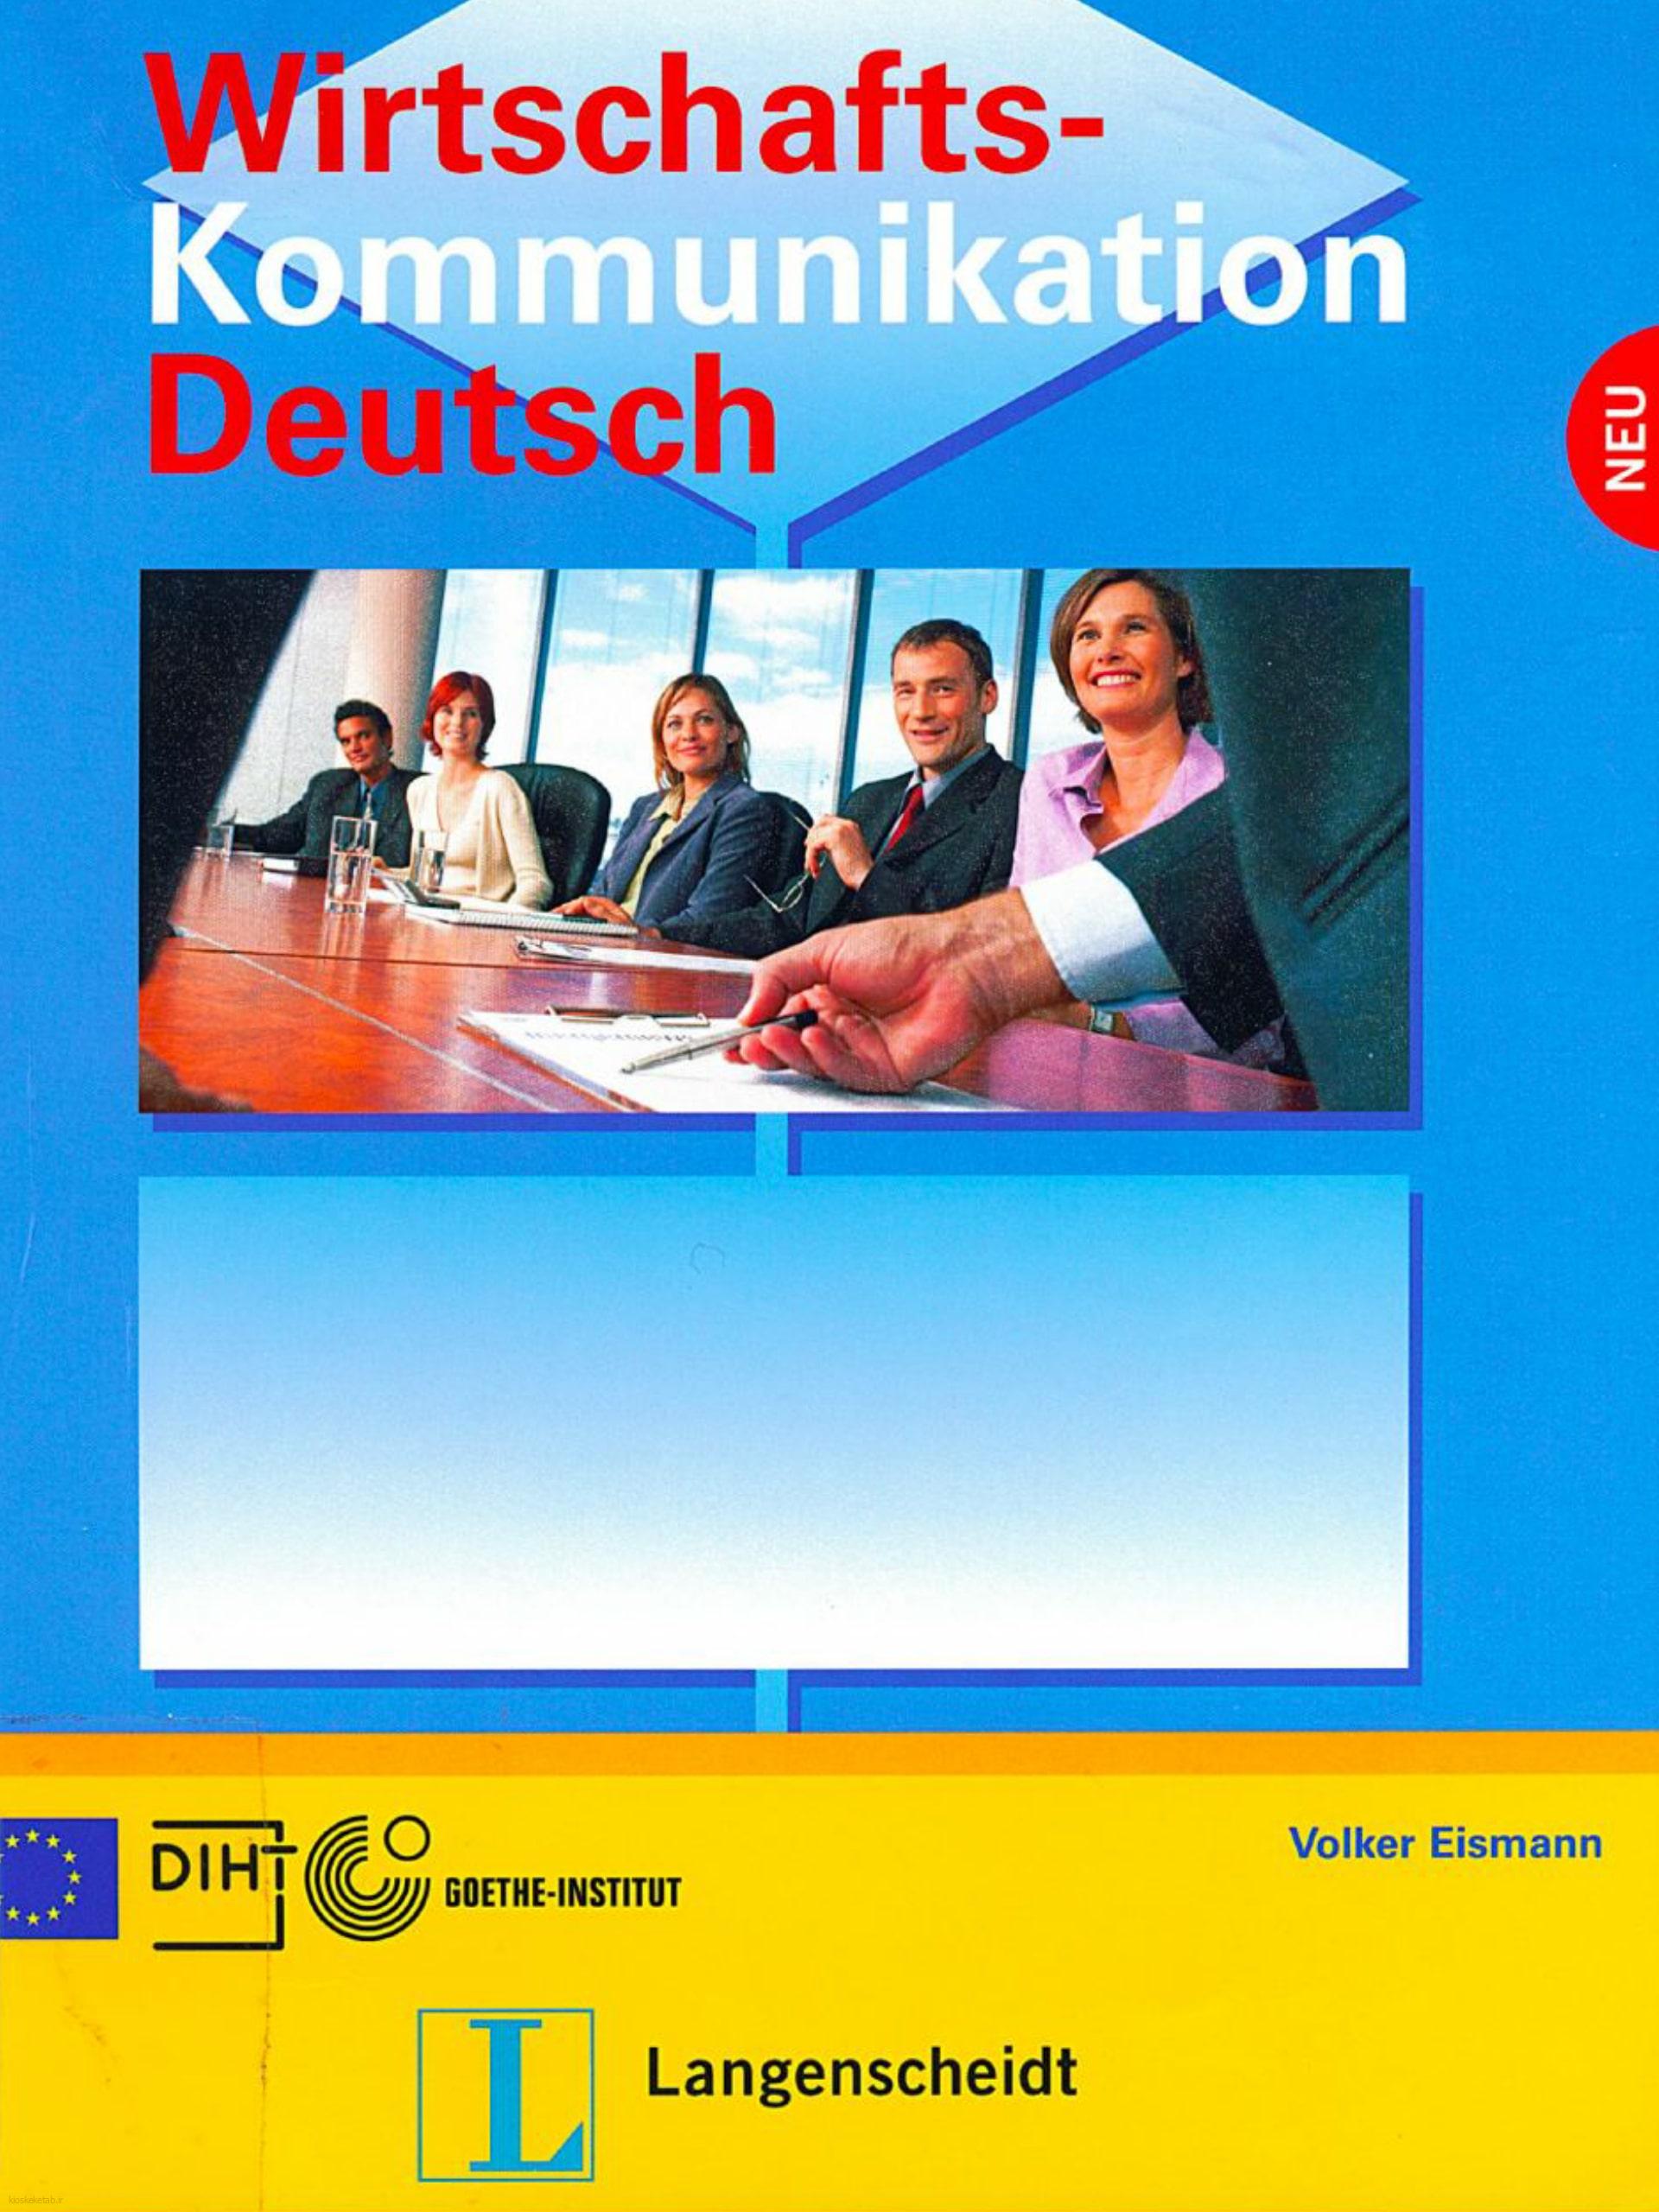 دانلود کتاب آلمانیwirtschaftskommunikation deutsch